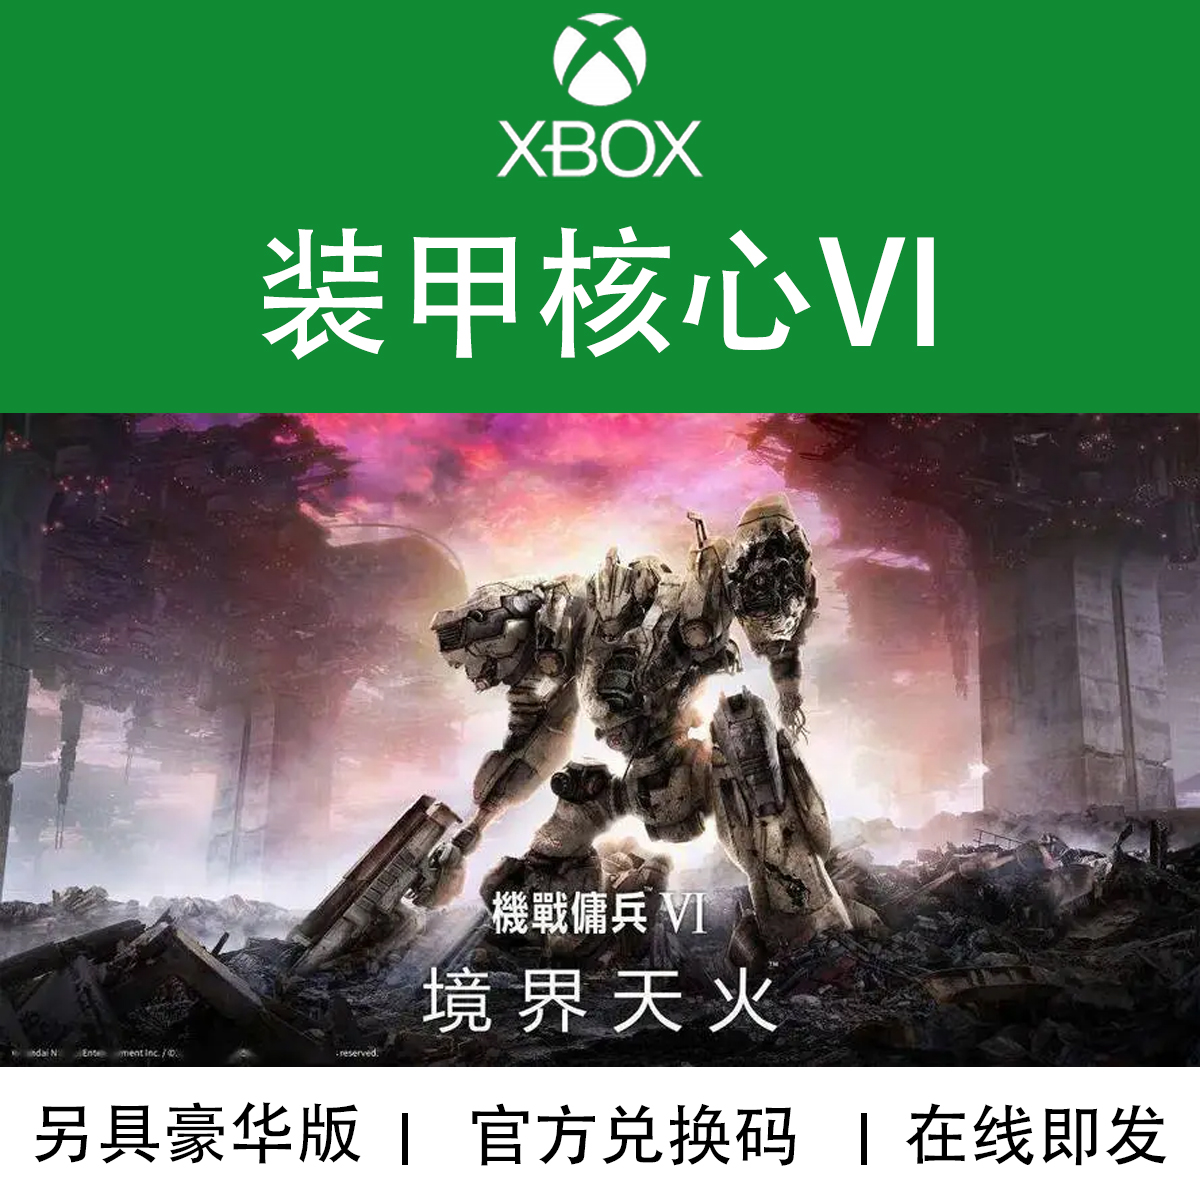 XBOX游戏 装甲核心6 境界天火 机战佣兵 ACVI 官方数字下载兑换码